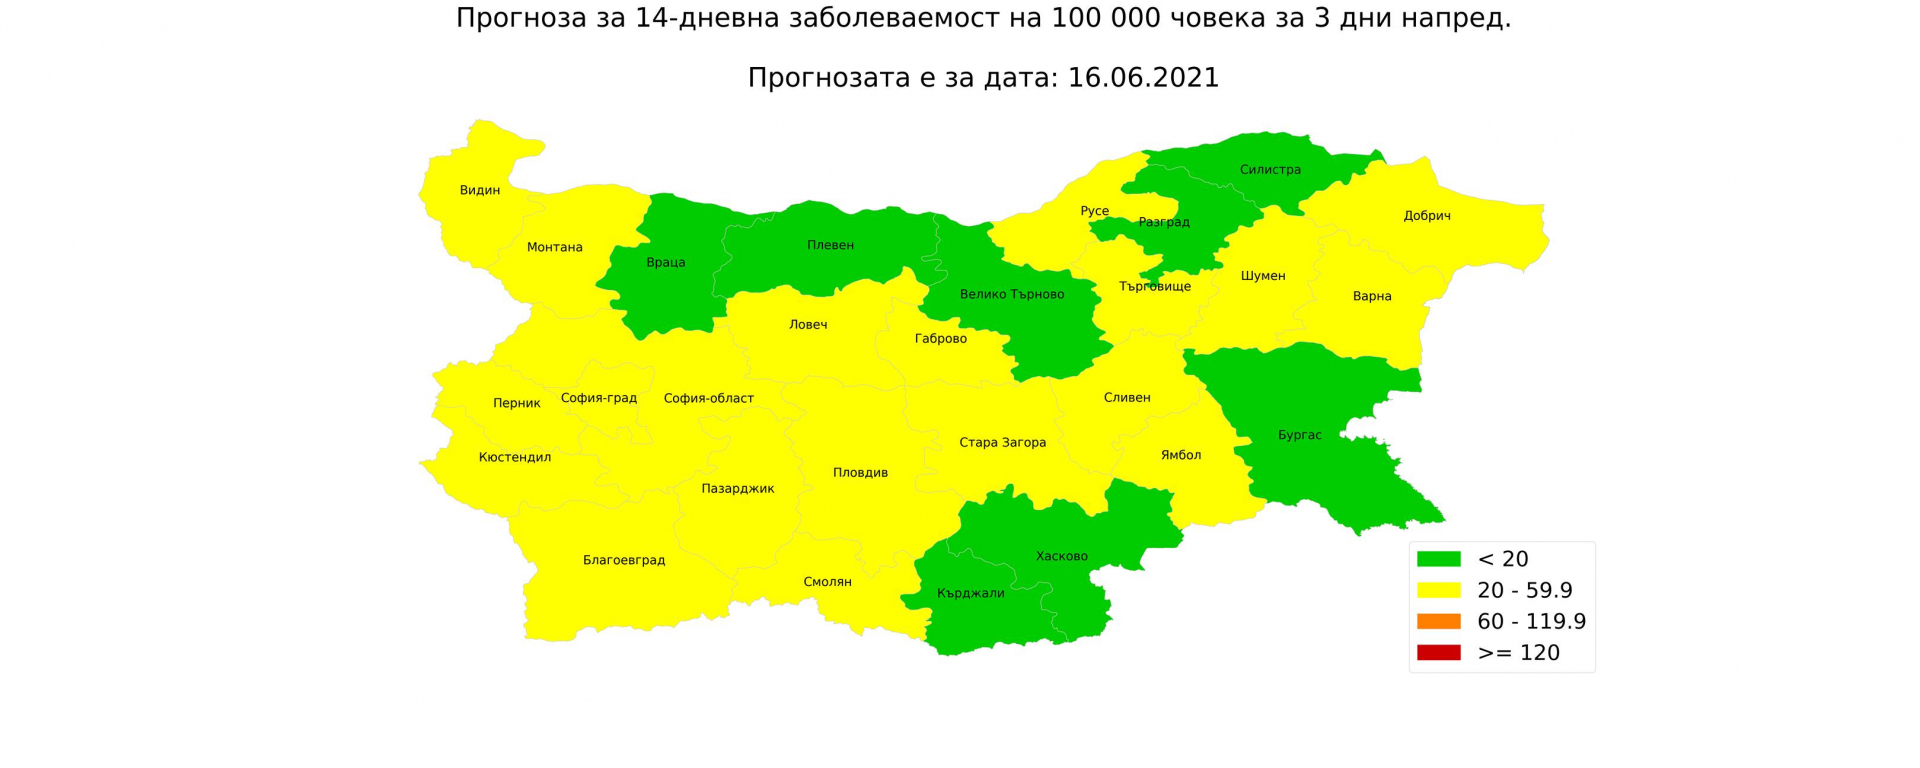 Проф. Витанов посочи най-безопасните К-19 места в България на тази КАРТА